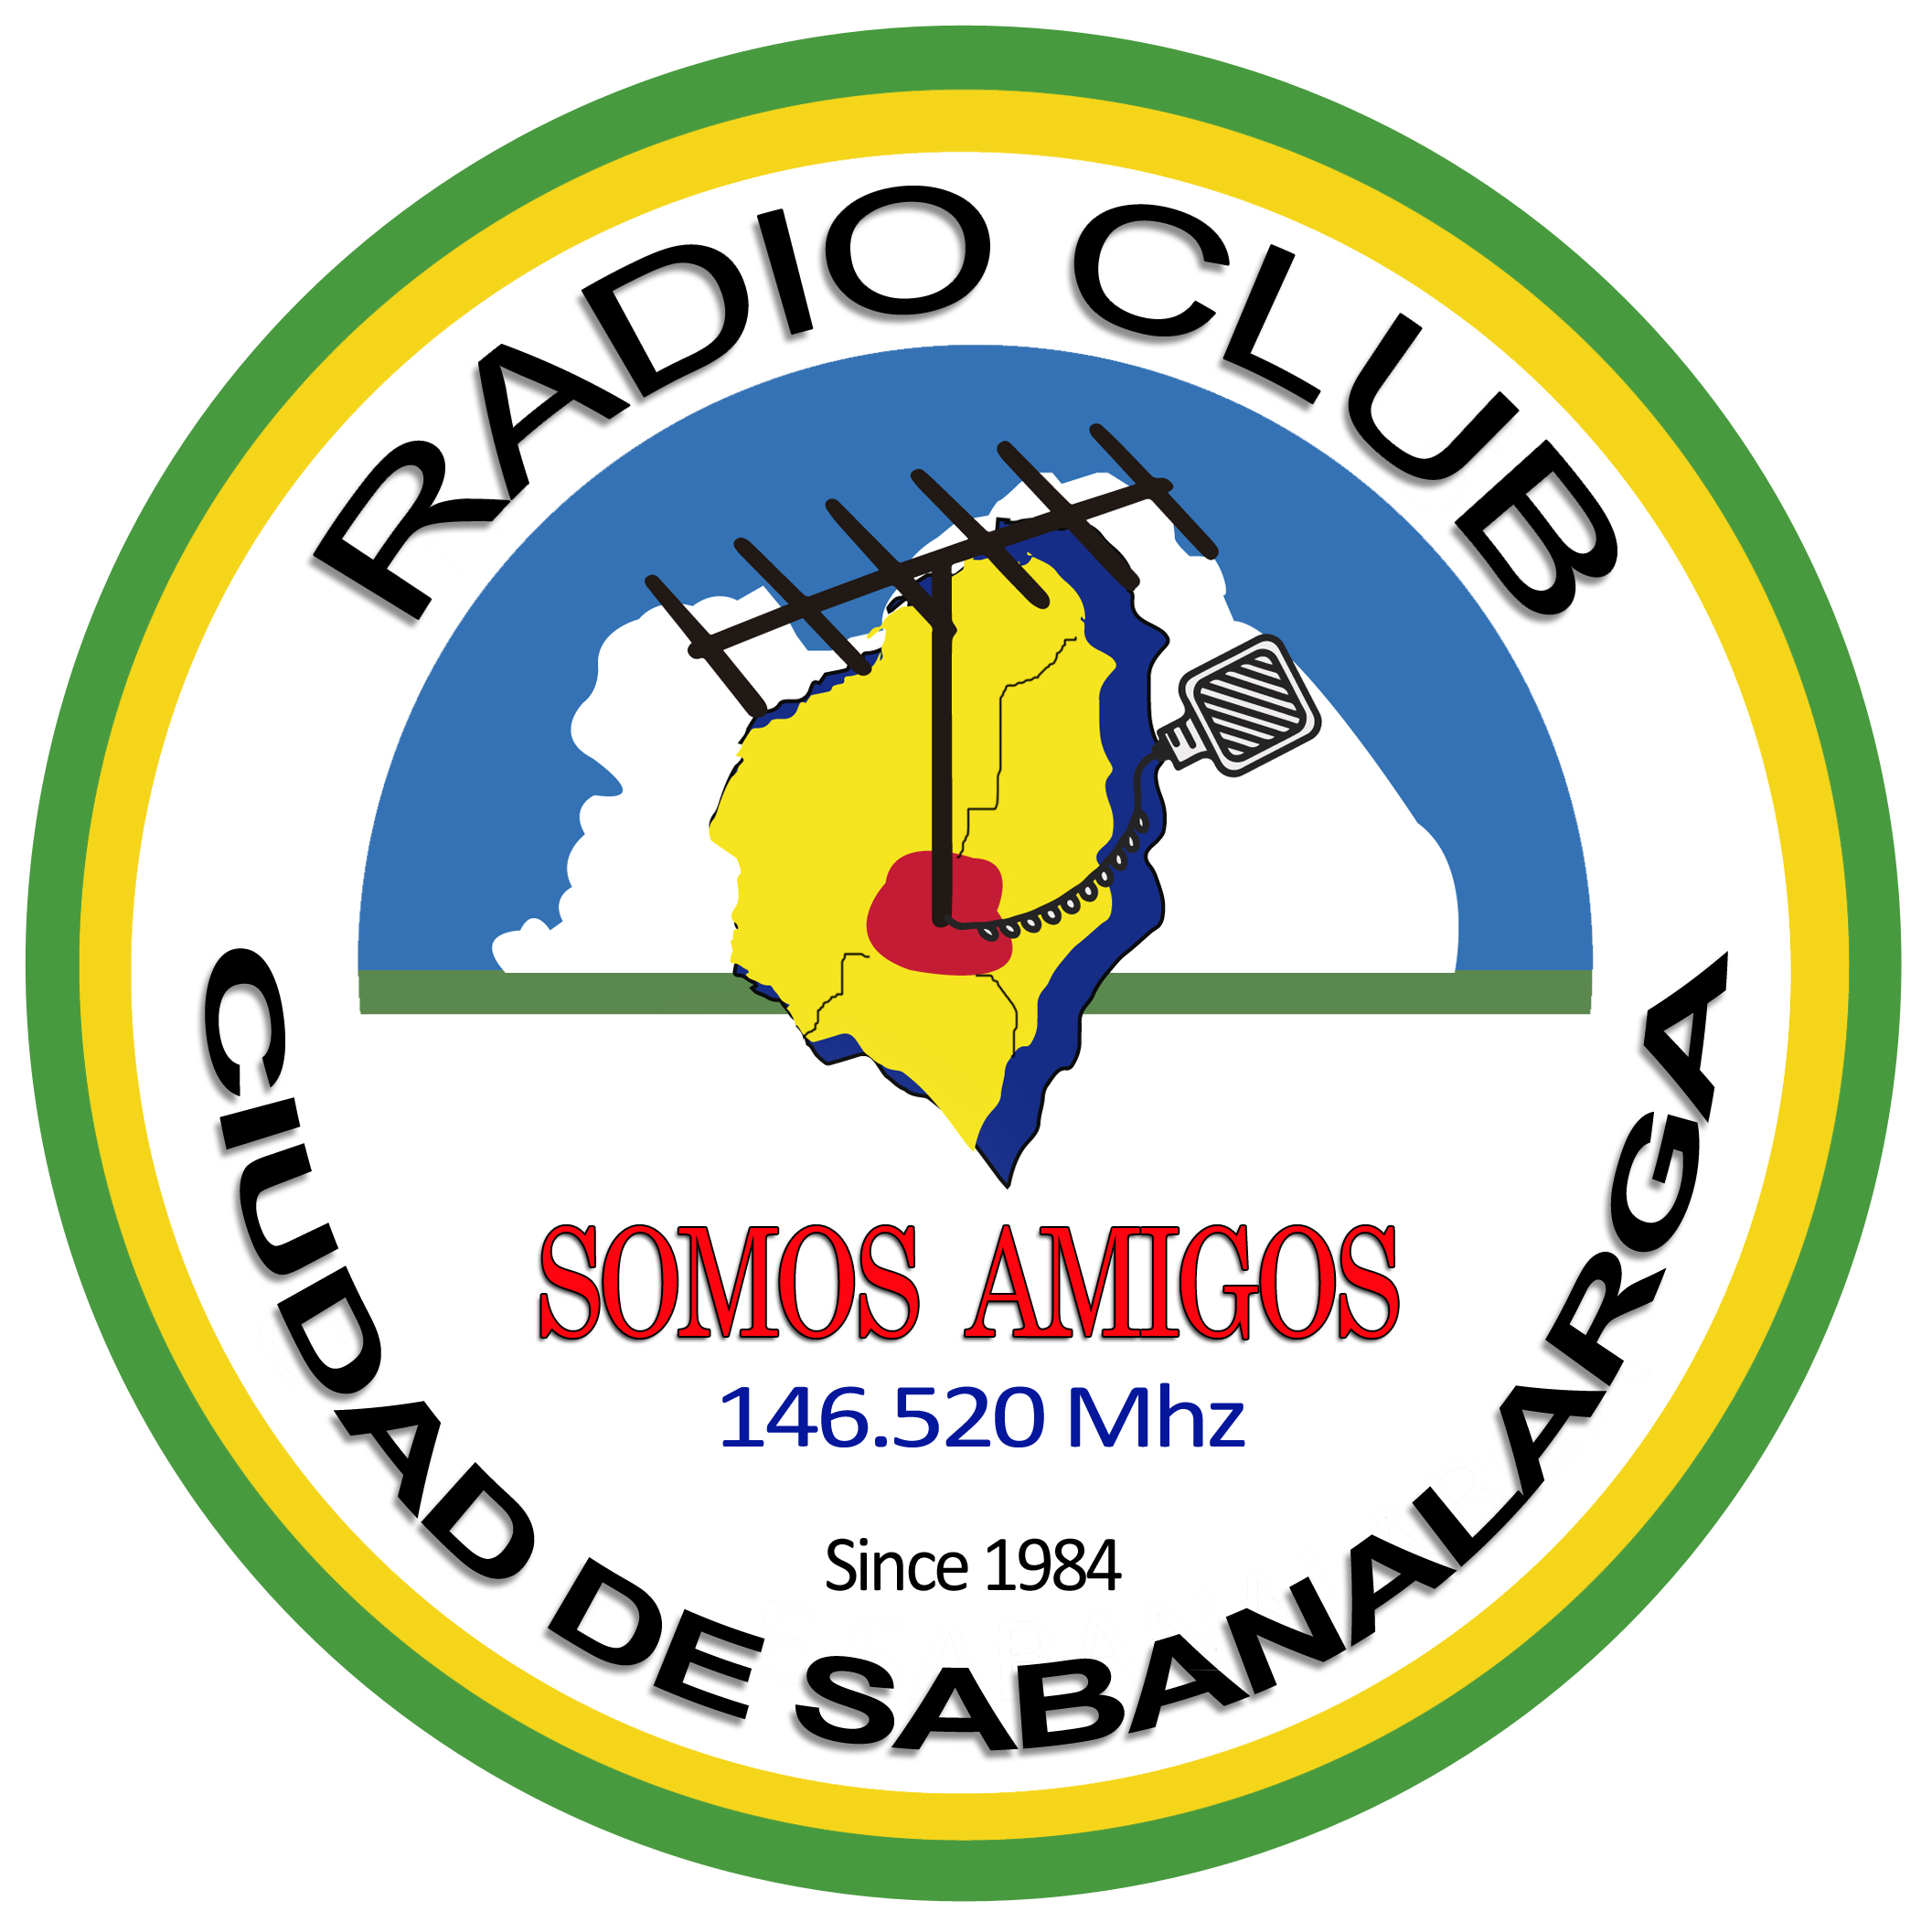 Radioaficionados de Sabanalarga Atlantico Colombia